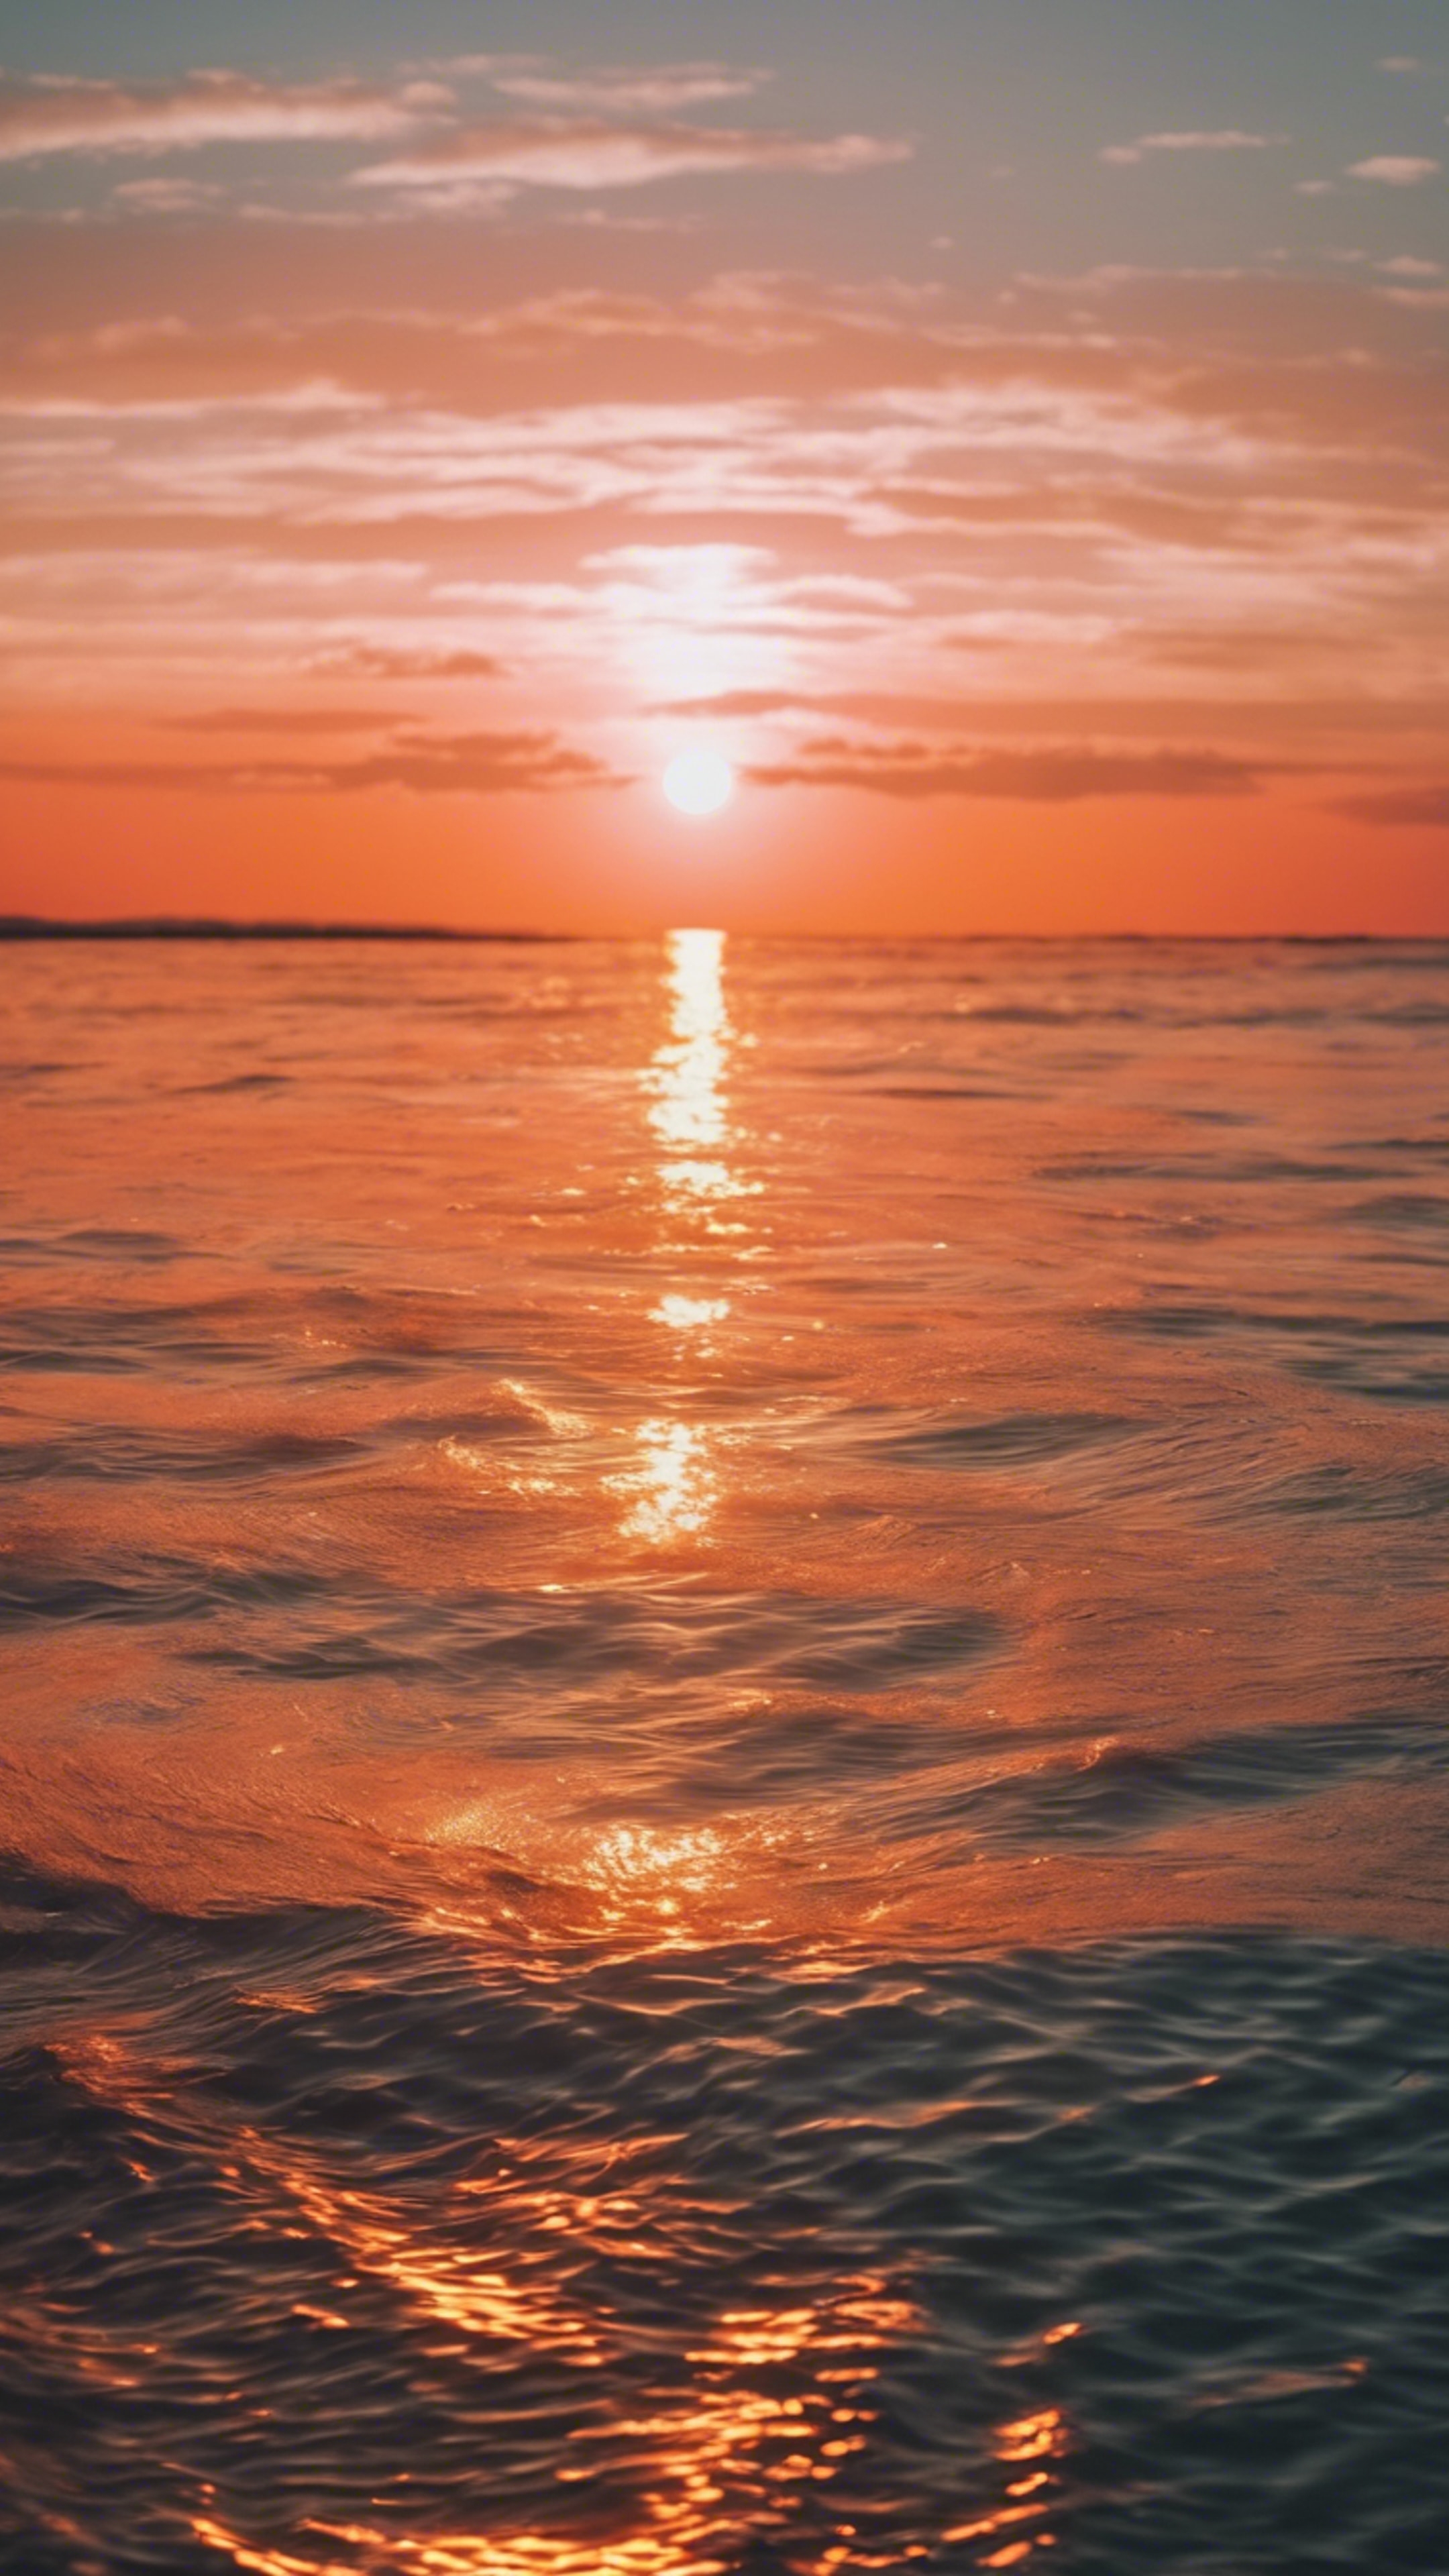 Bright neon orange sun setting over a calm sea. Sfondo[6f90c626ce0243a7b617]